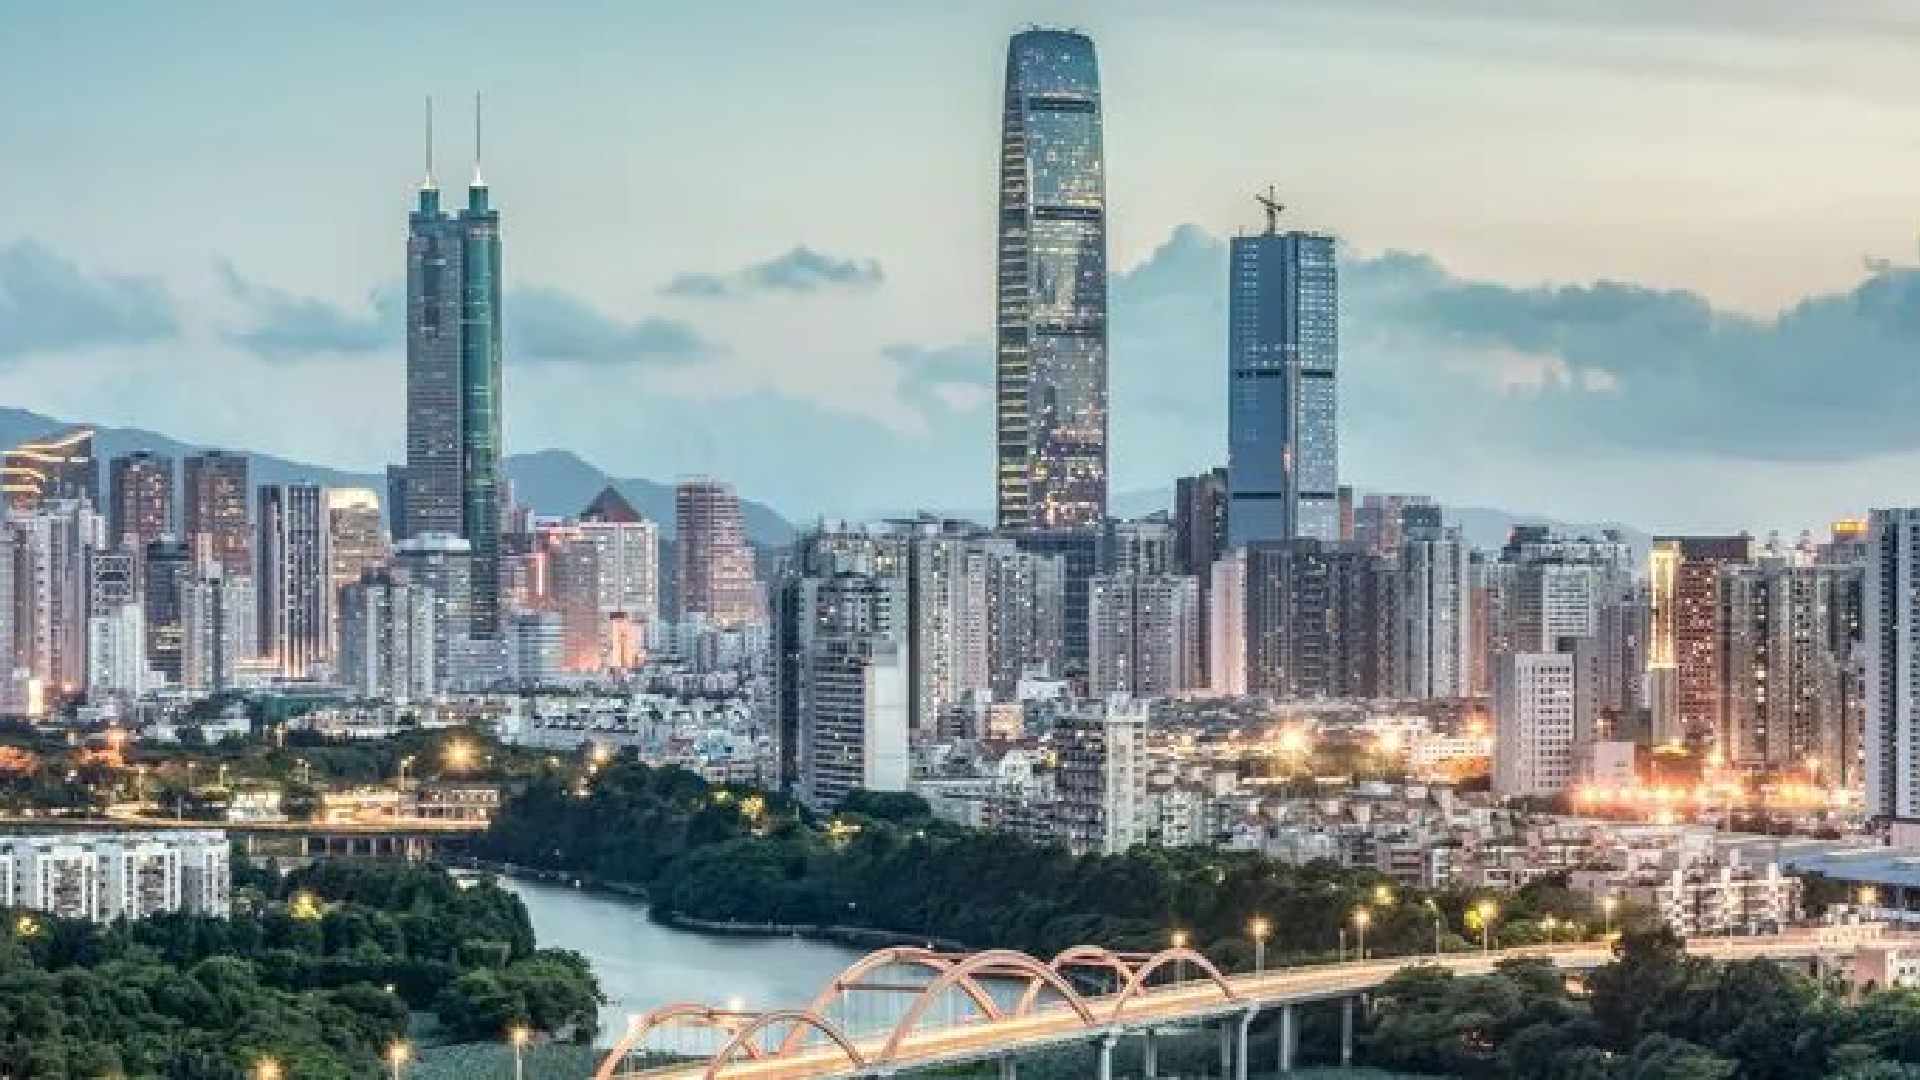 168体育助力深圳打造全球“鸿蒙欧拉之城”